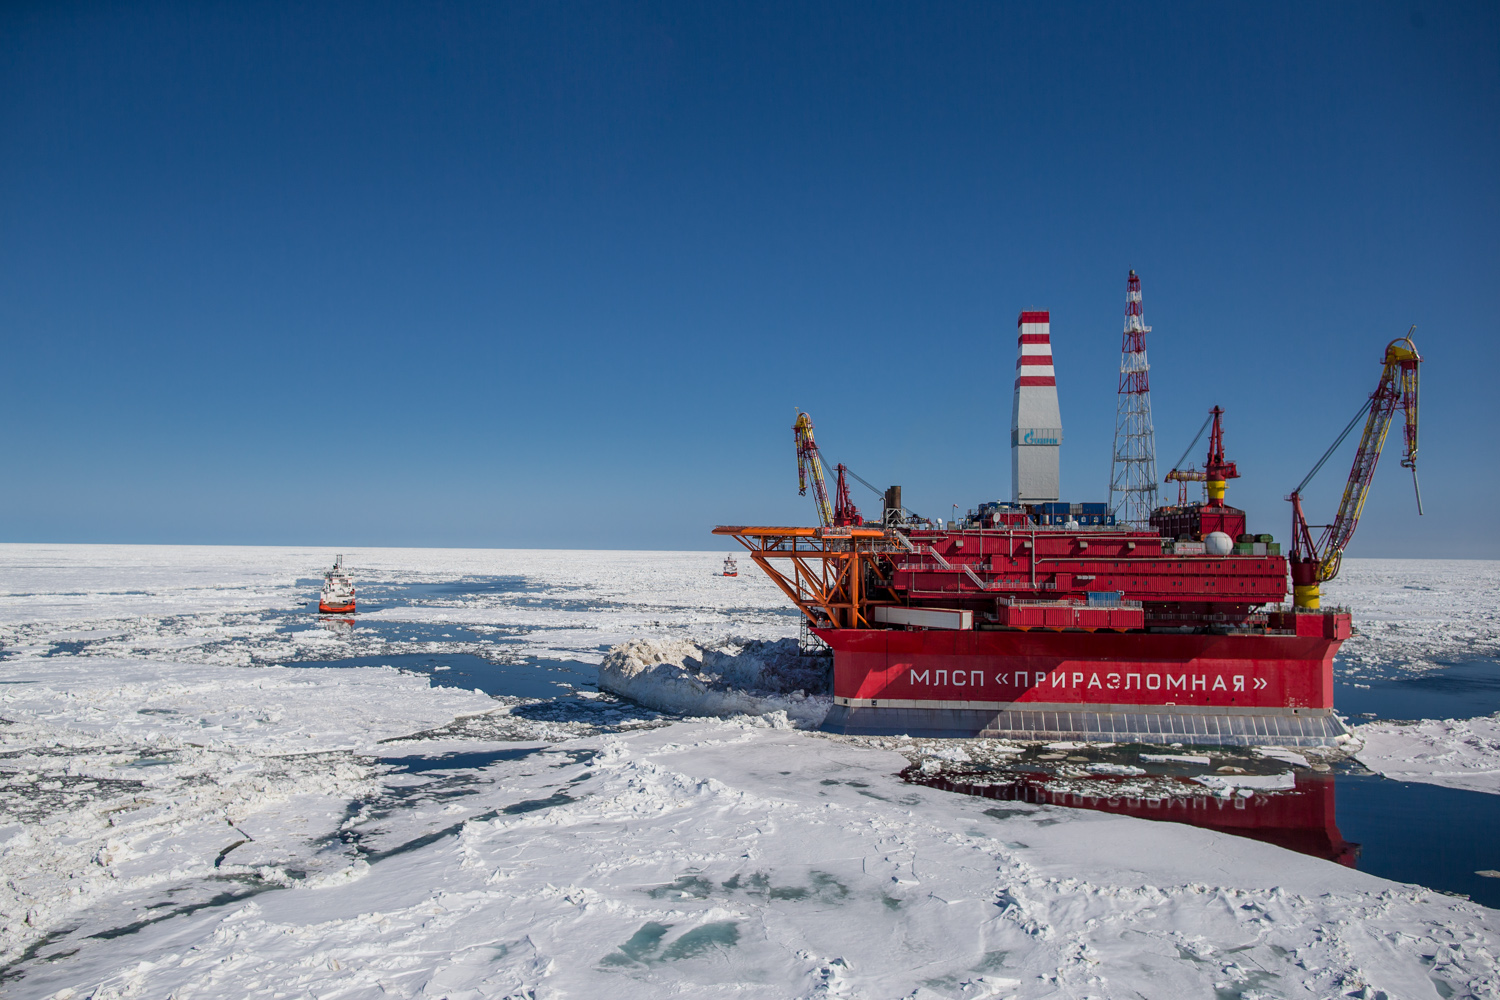 Доклад: Роль и задачи военной гидрографии в экономическом освоении шельфа Арктических морей России